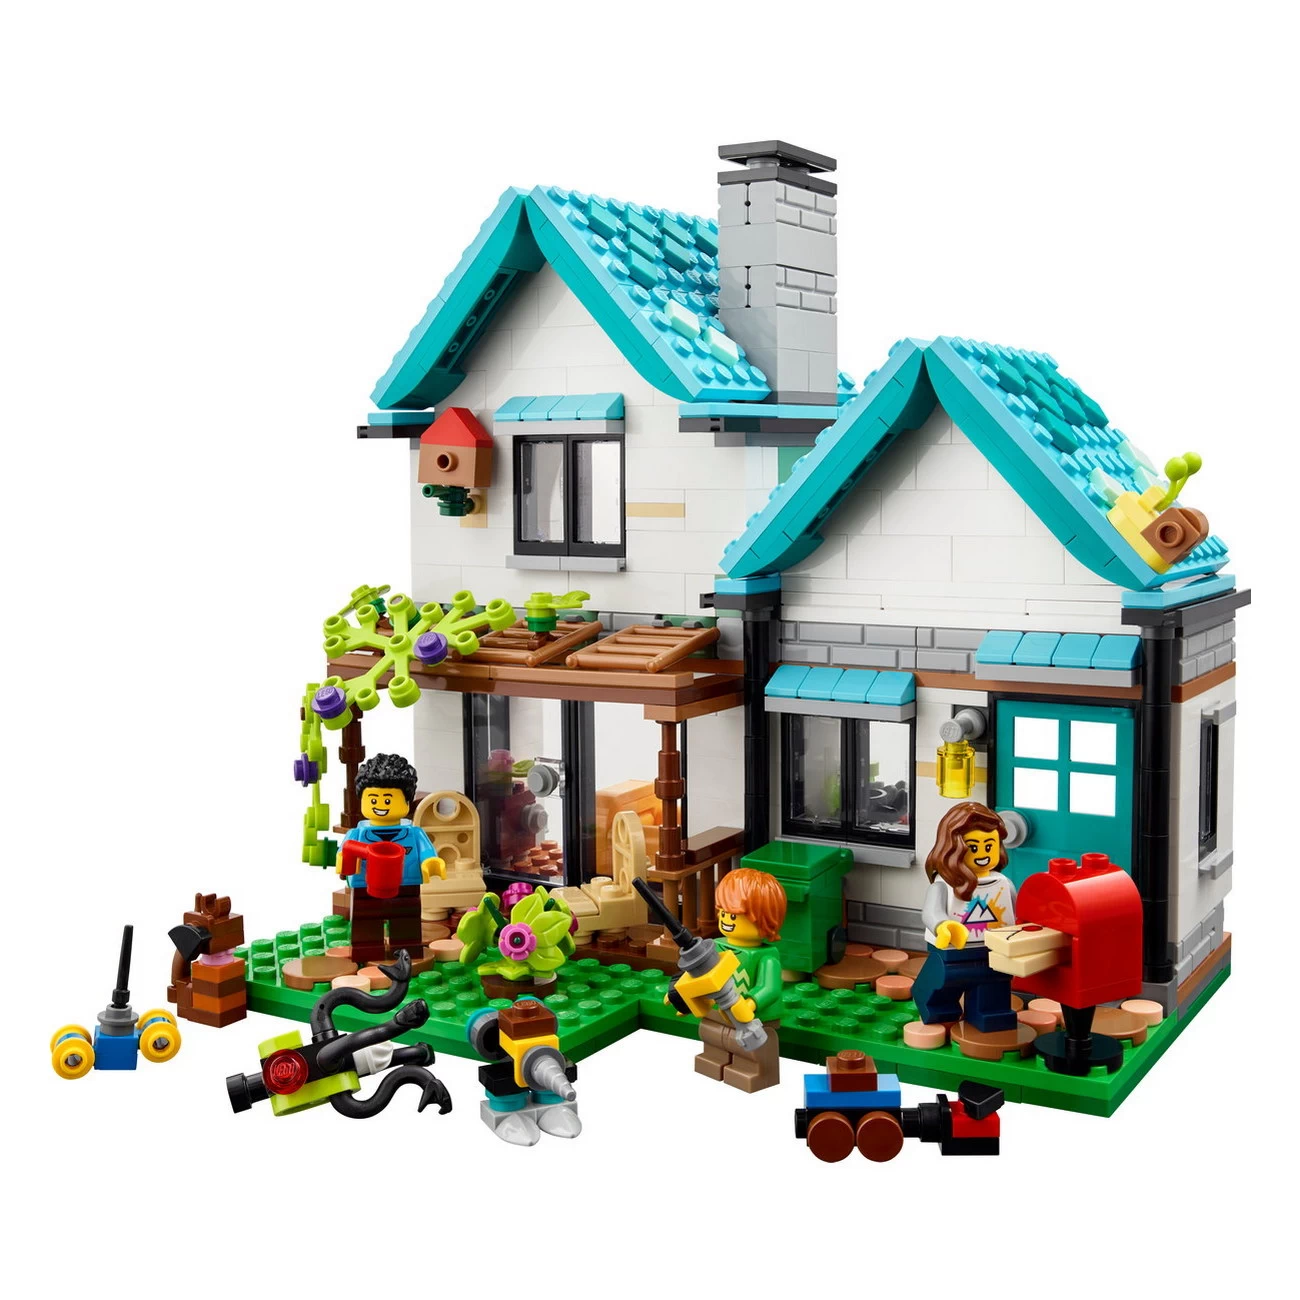 LEGO Creator 31139 - Gemütliches Haus